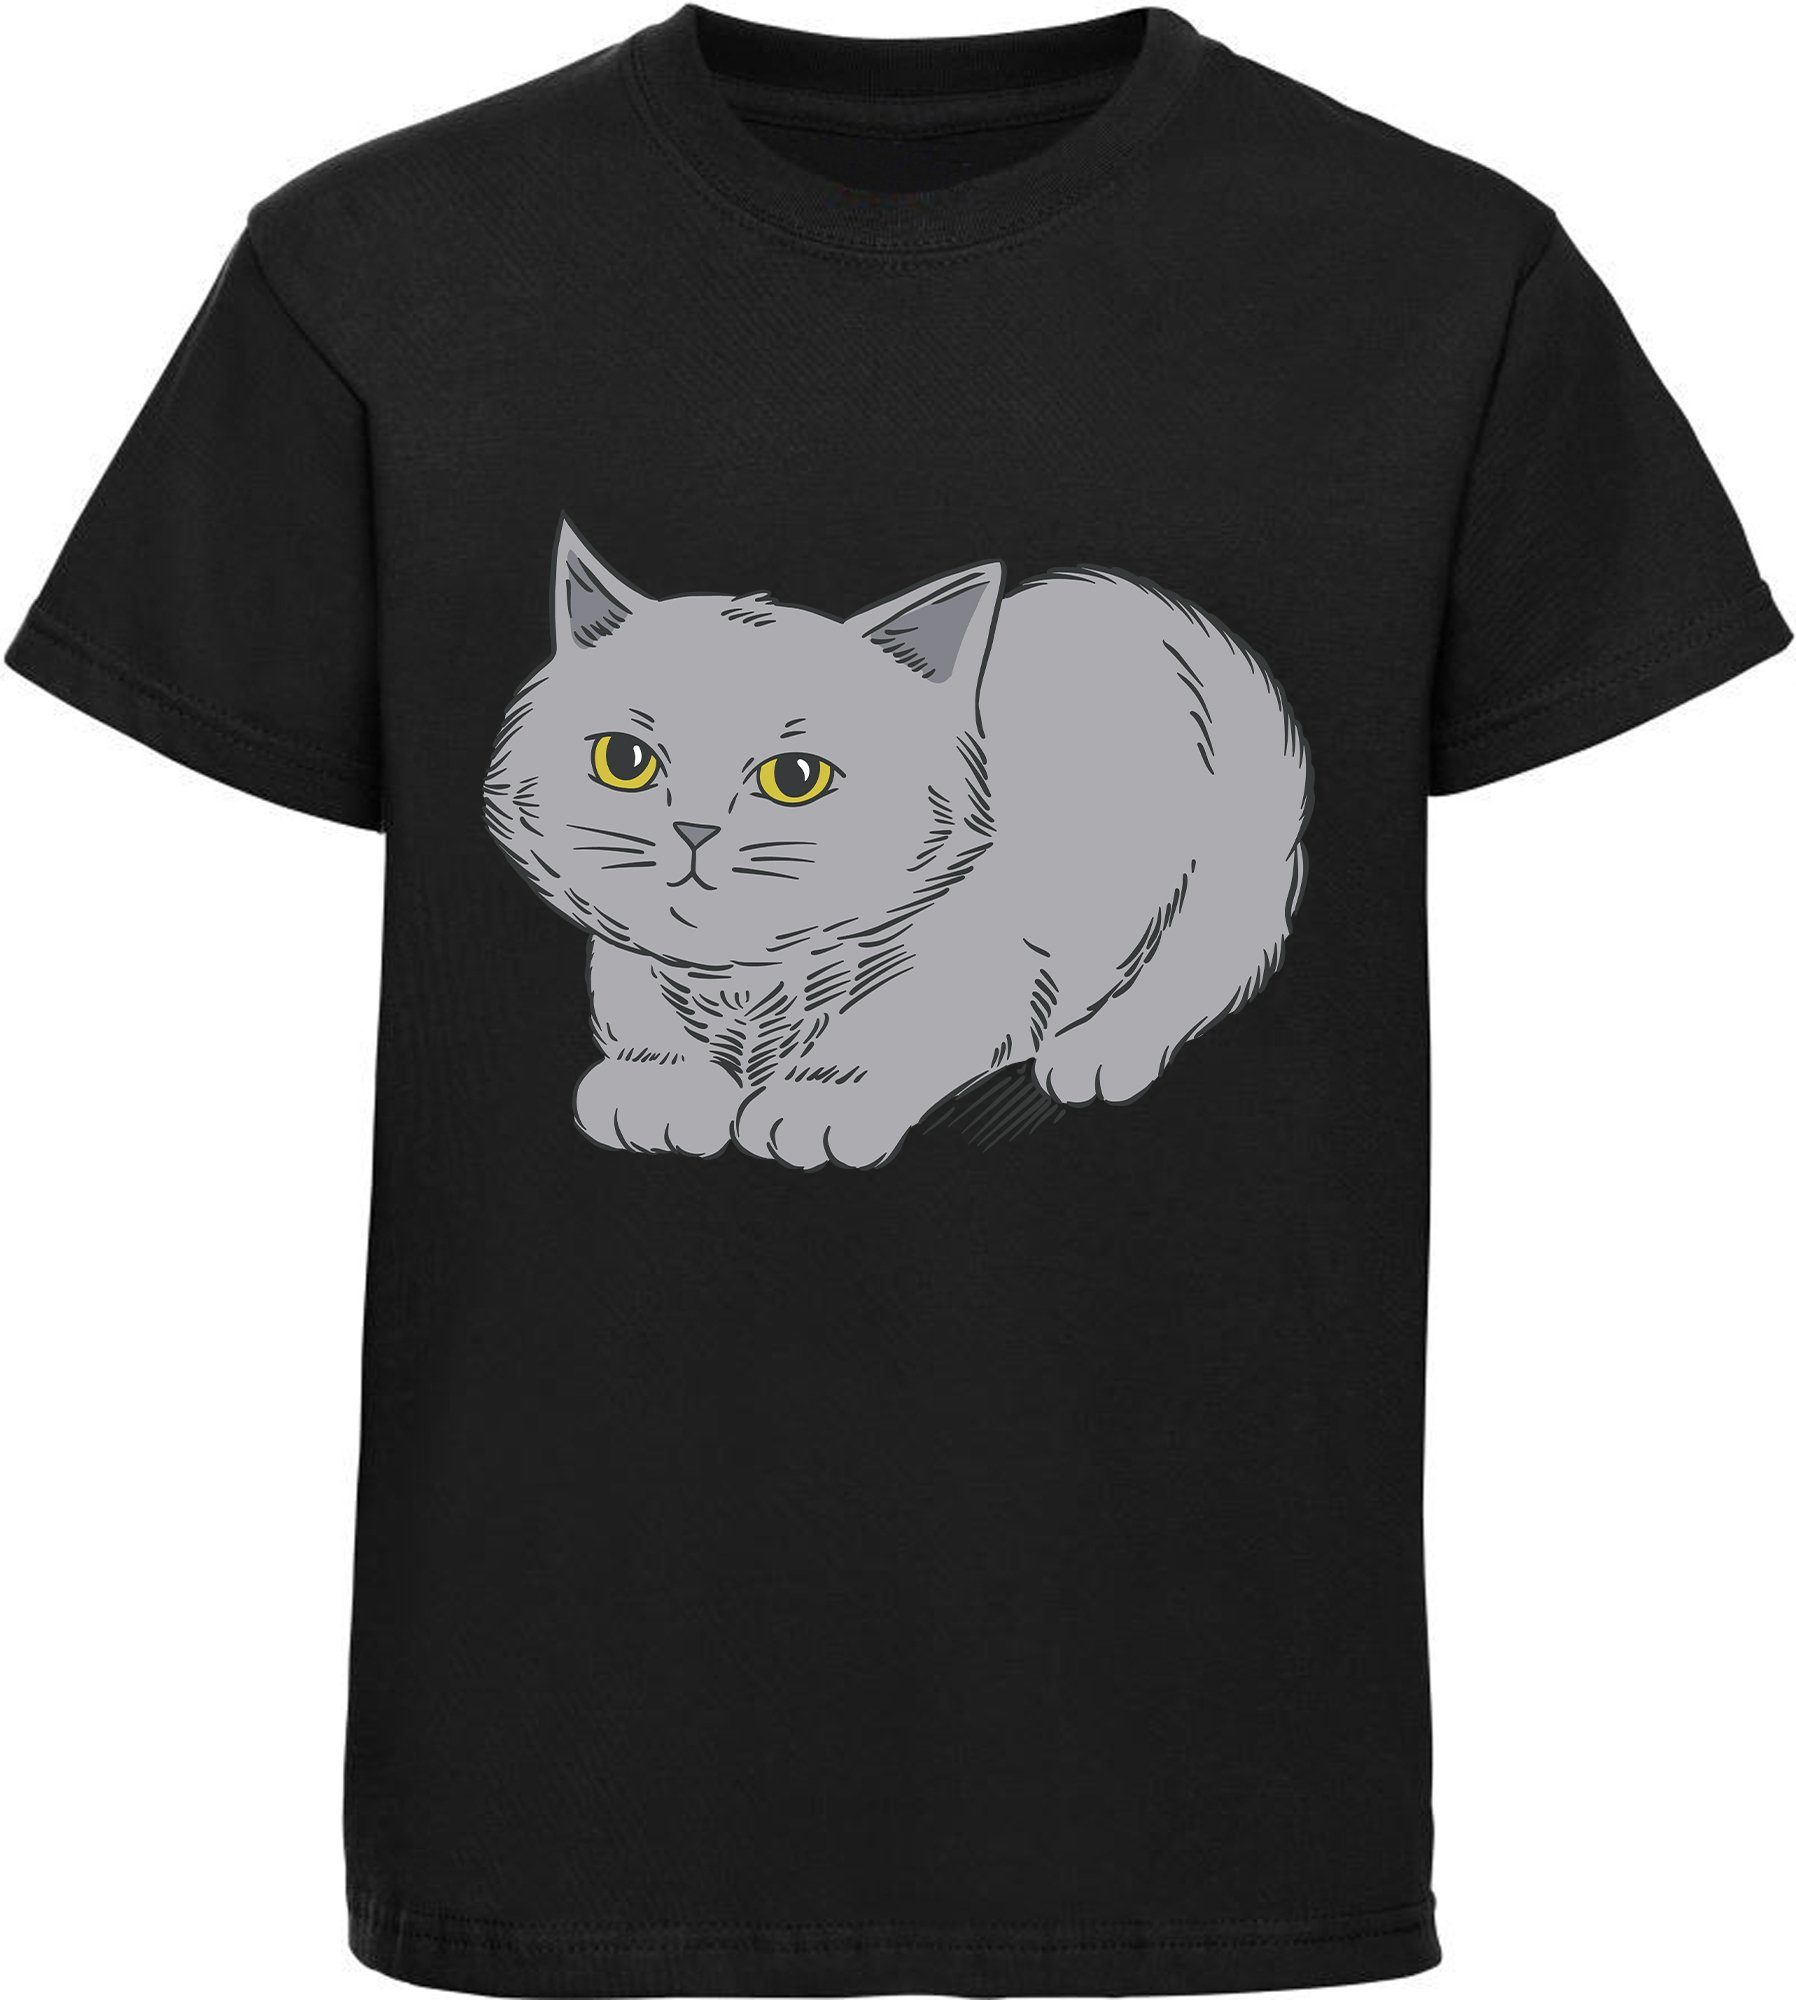 MyDesign24 Print-Shirt bedrucktes Mädchen T-Shirt mit niedlicher grauen Katze Baumwollshirt mit Katze, weiß, schwarz, rot, rosa, i107 | T-Shirts